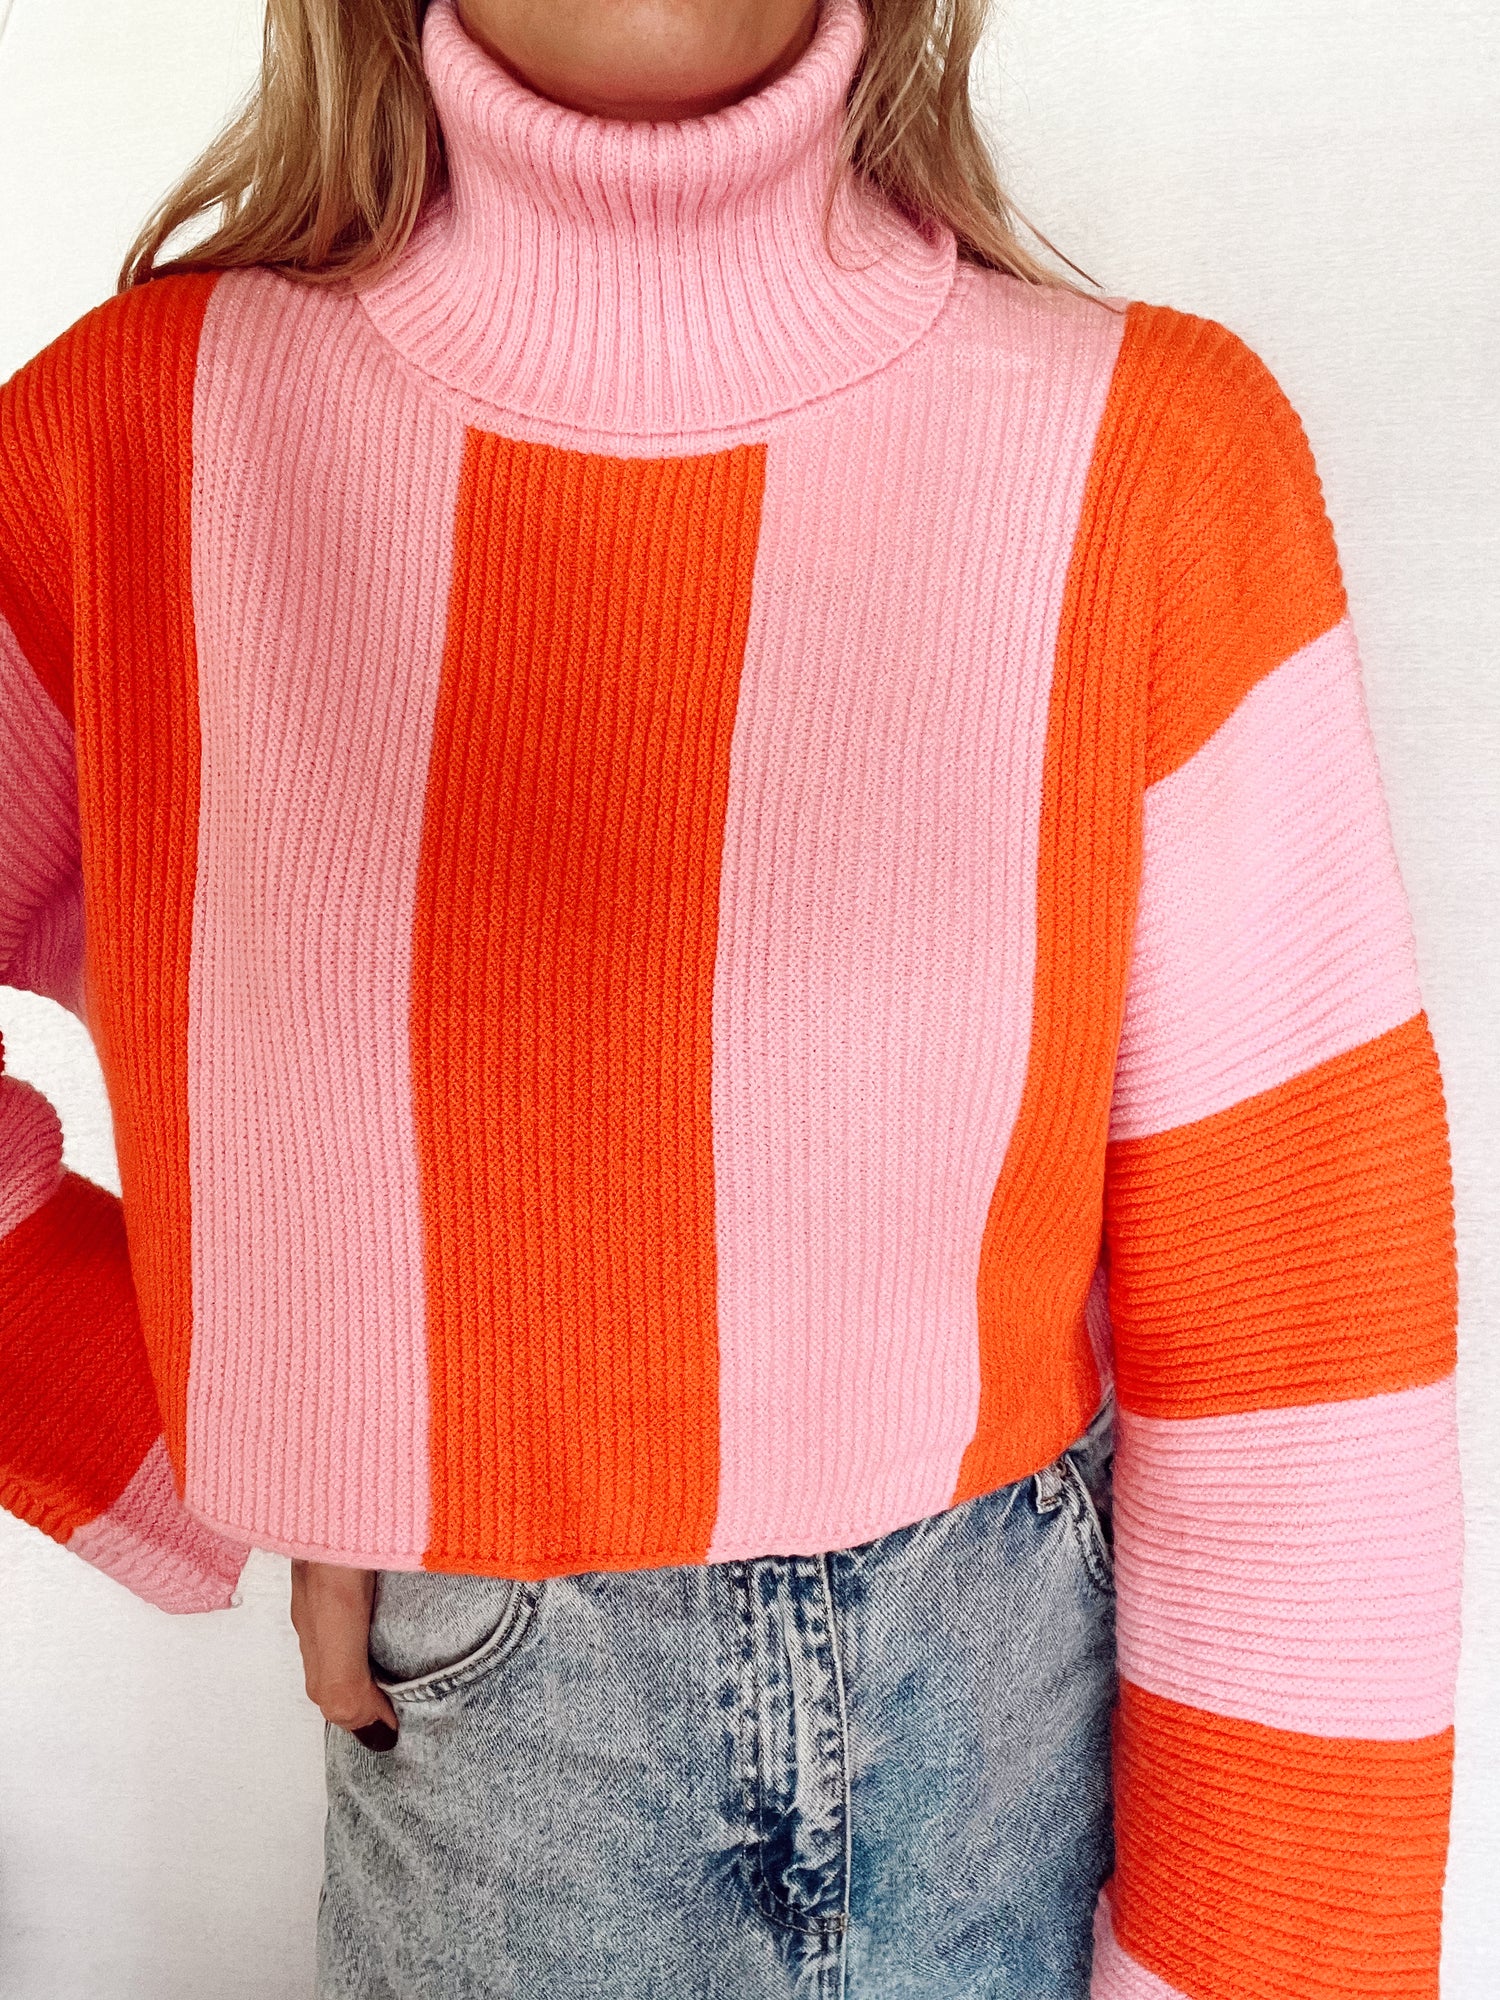 Roze oranje gestreepte sweater met col. De trui heeft een wat cropped model en wijd uitlopende mouwen. De trui is one-size en geschikt voor de maten S t/m L. Materiaal van de trui is: 50% viscose, 50% polyamide. Roze met oranje verticale strepen cropped trui